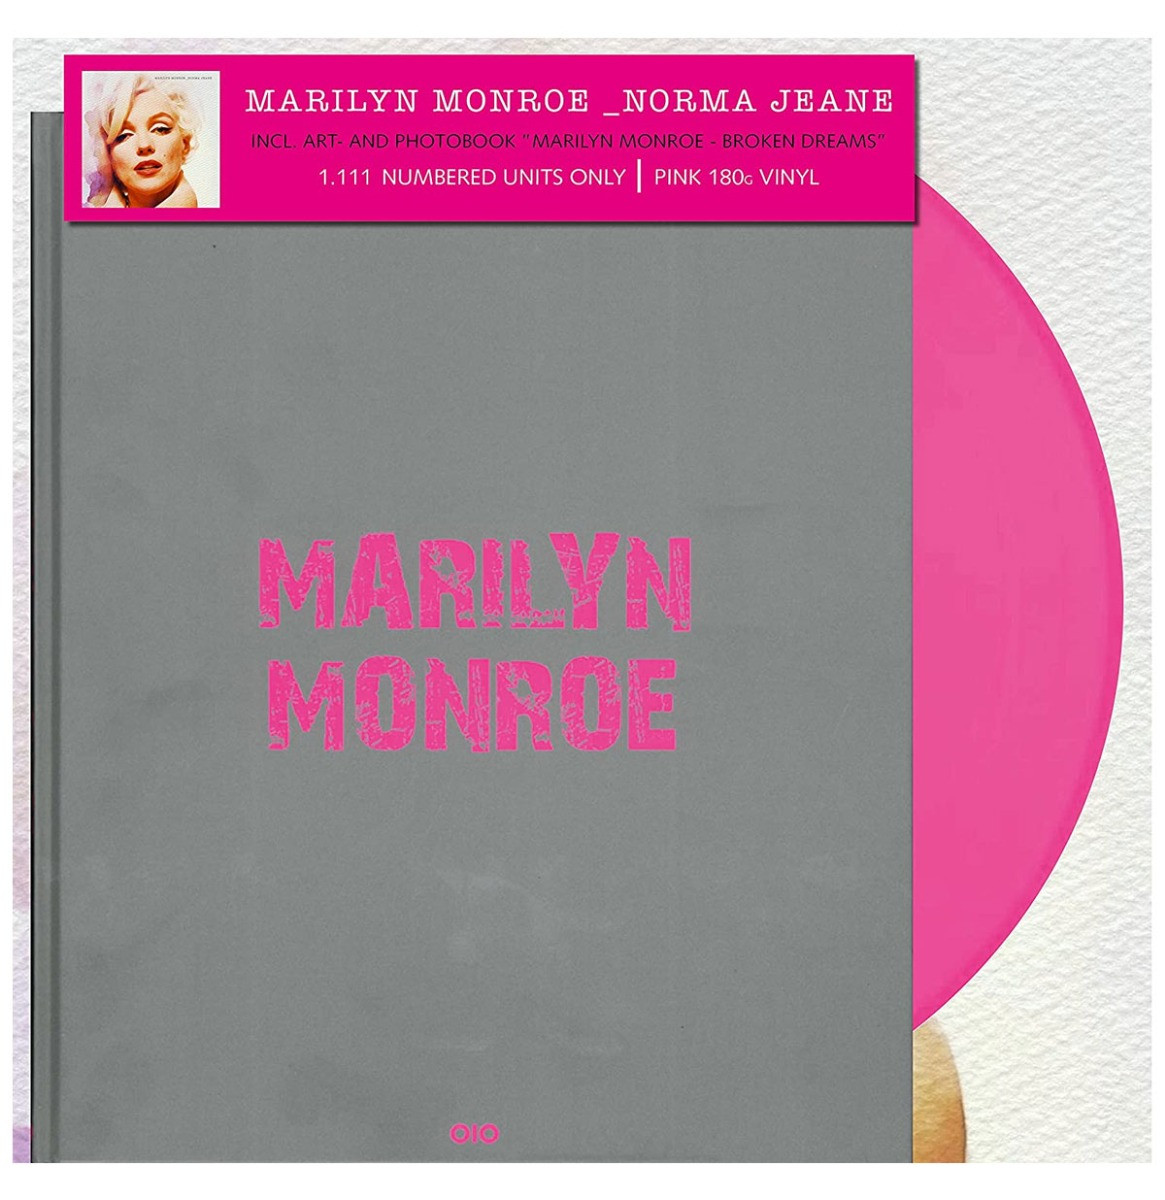 Marilyn Monroe - Norma Jean Roze Gekleurd Vinyl + Kunstwerk en Fotoboek Broken Dreams - Beperkte Oplage